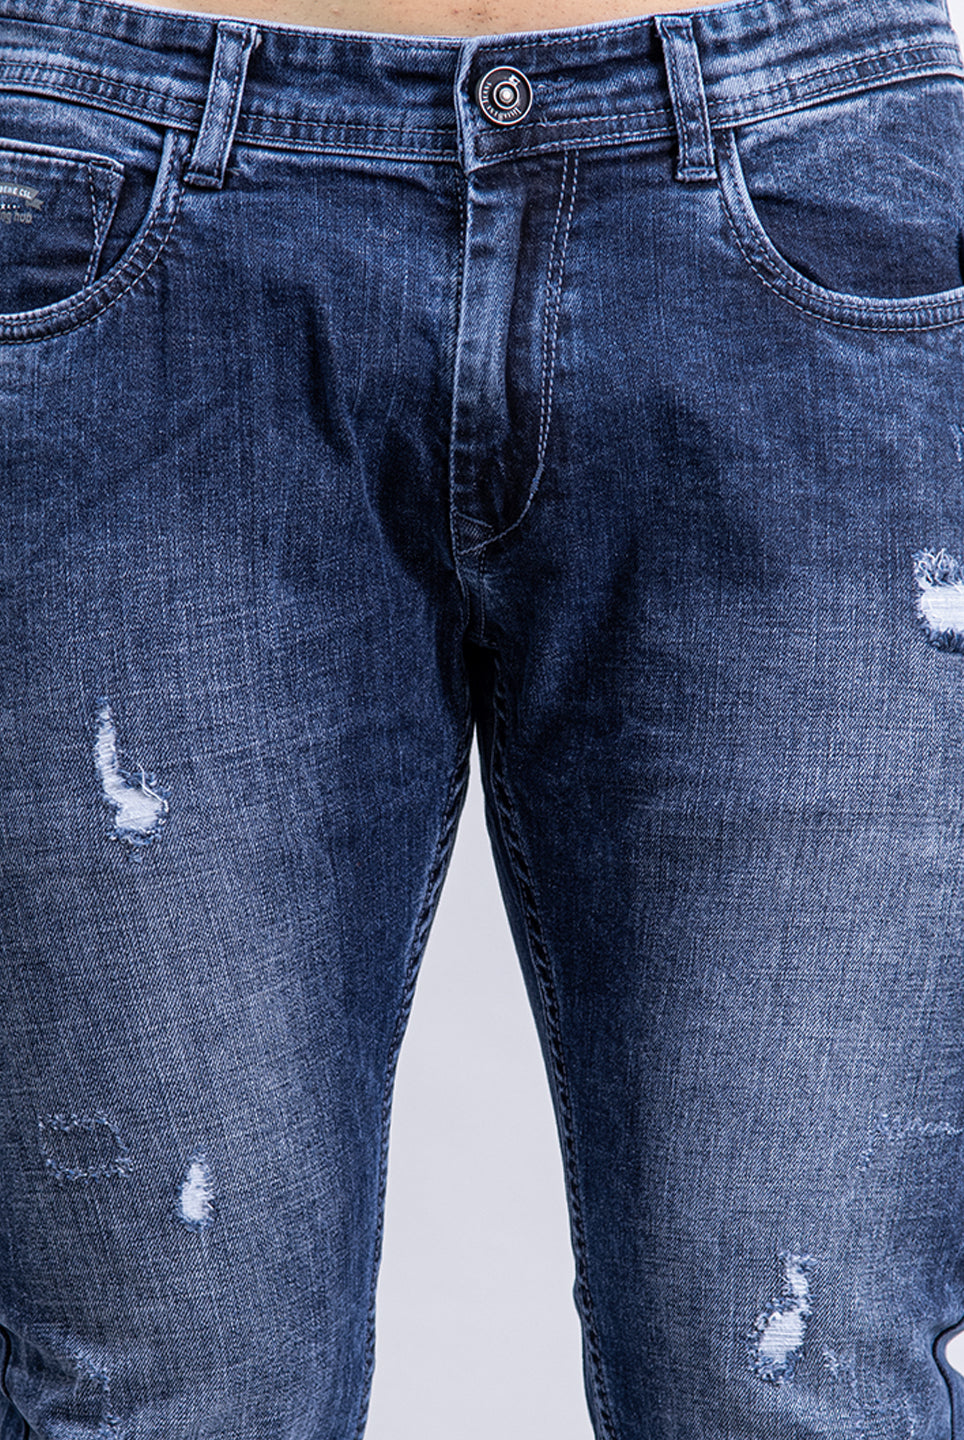  original denim jeans